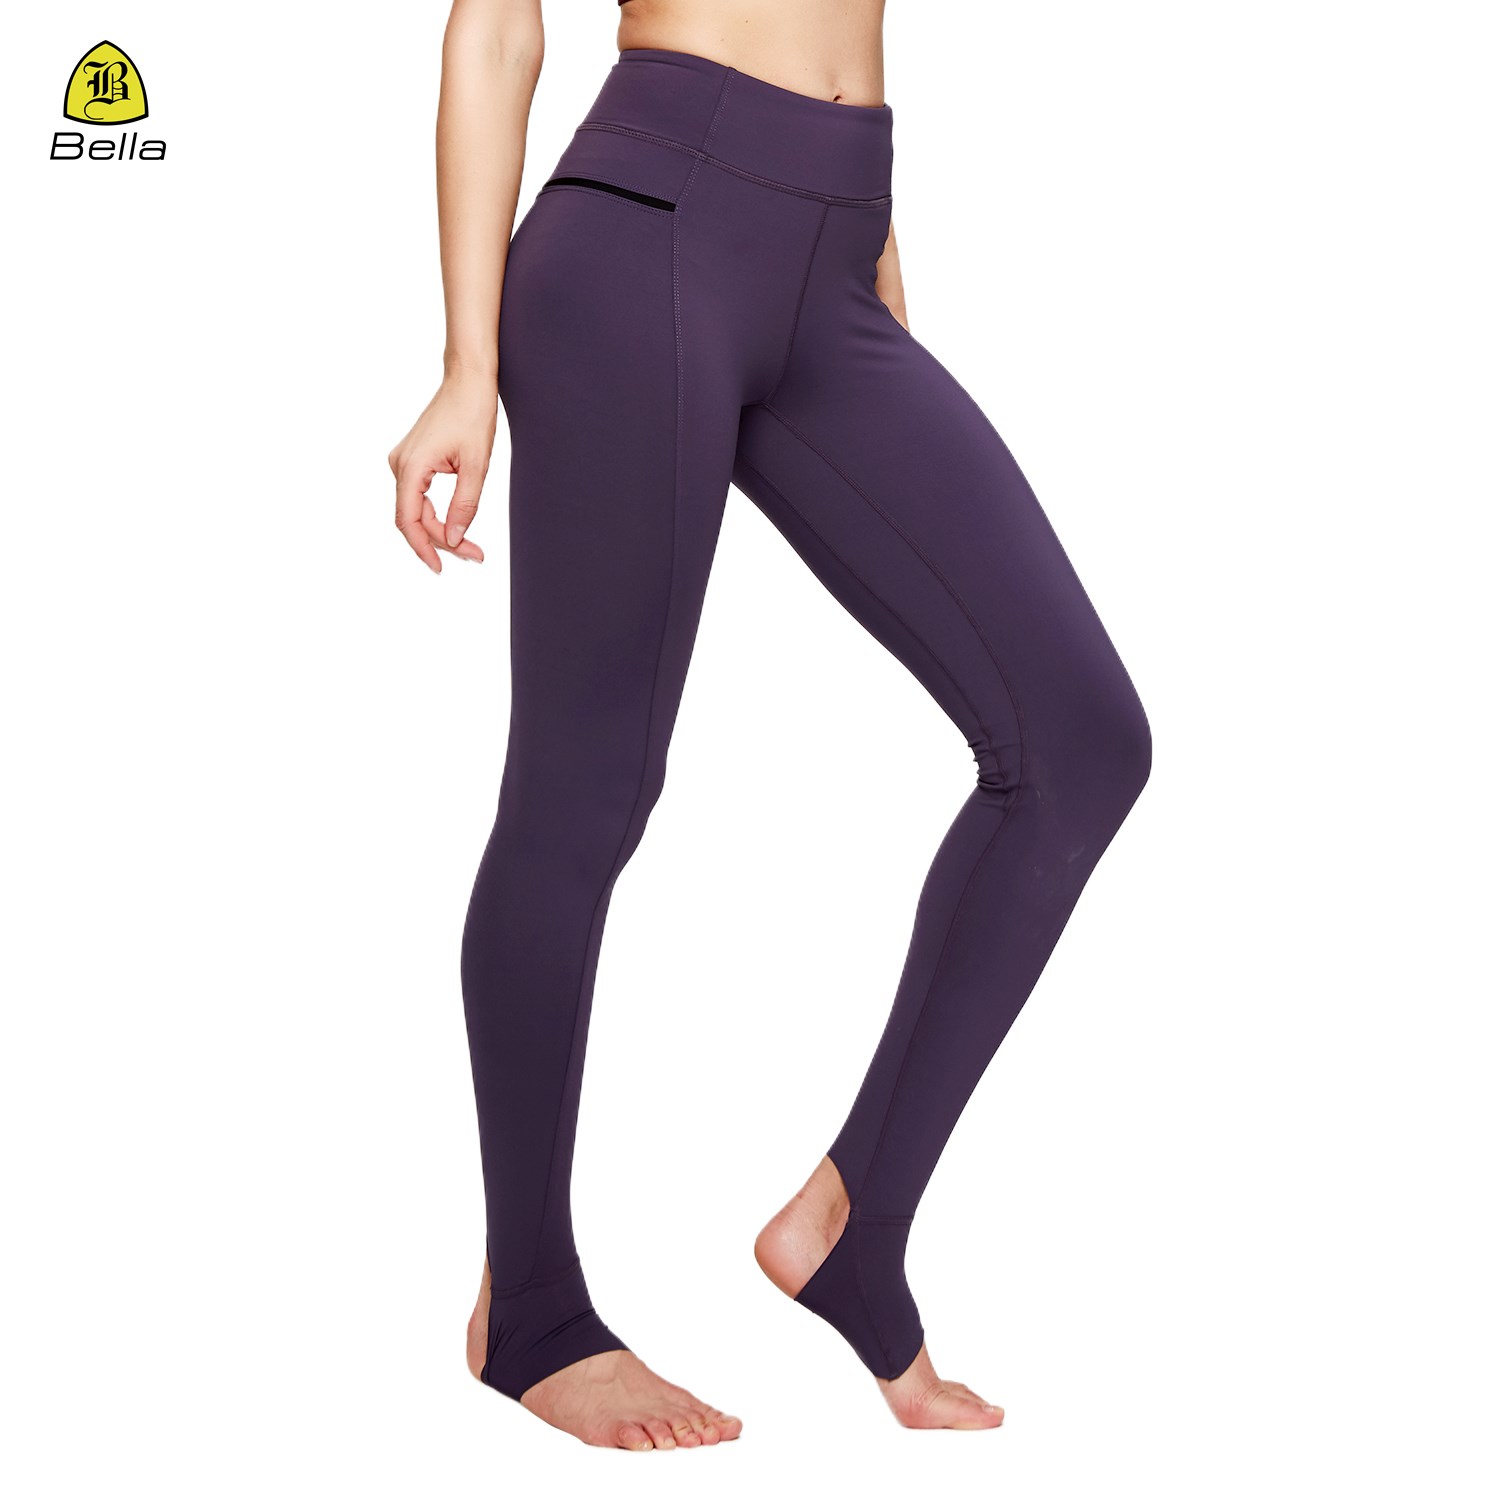 Bequeme Yoga-Leggings mit hoher Taille und hohem Stretchanteil über dem Absatz